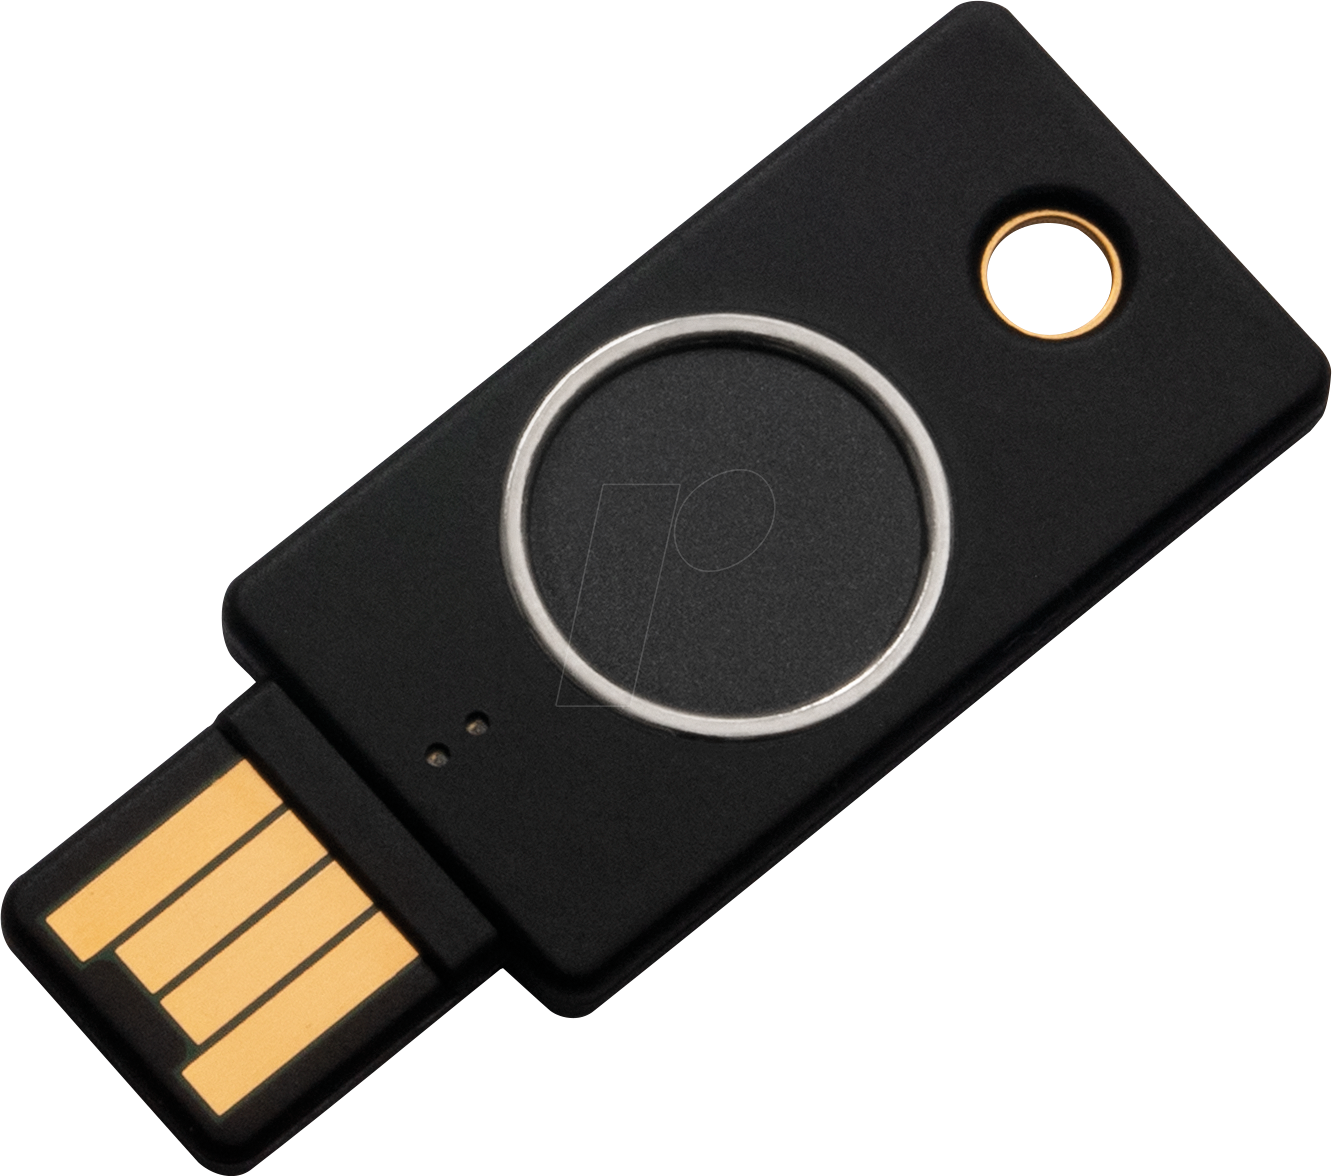 YUBIKEY BIO: Sicherheitsschlüssel, Bio USB, FIDO Edition bei